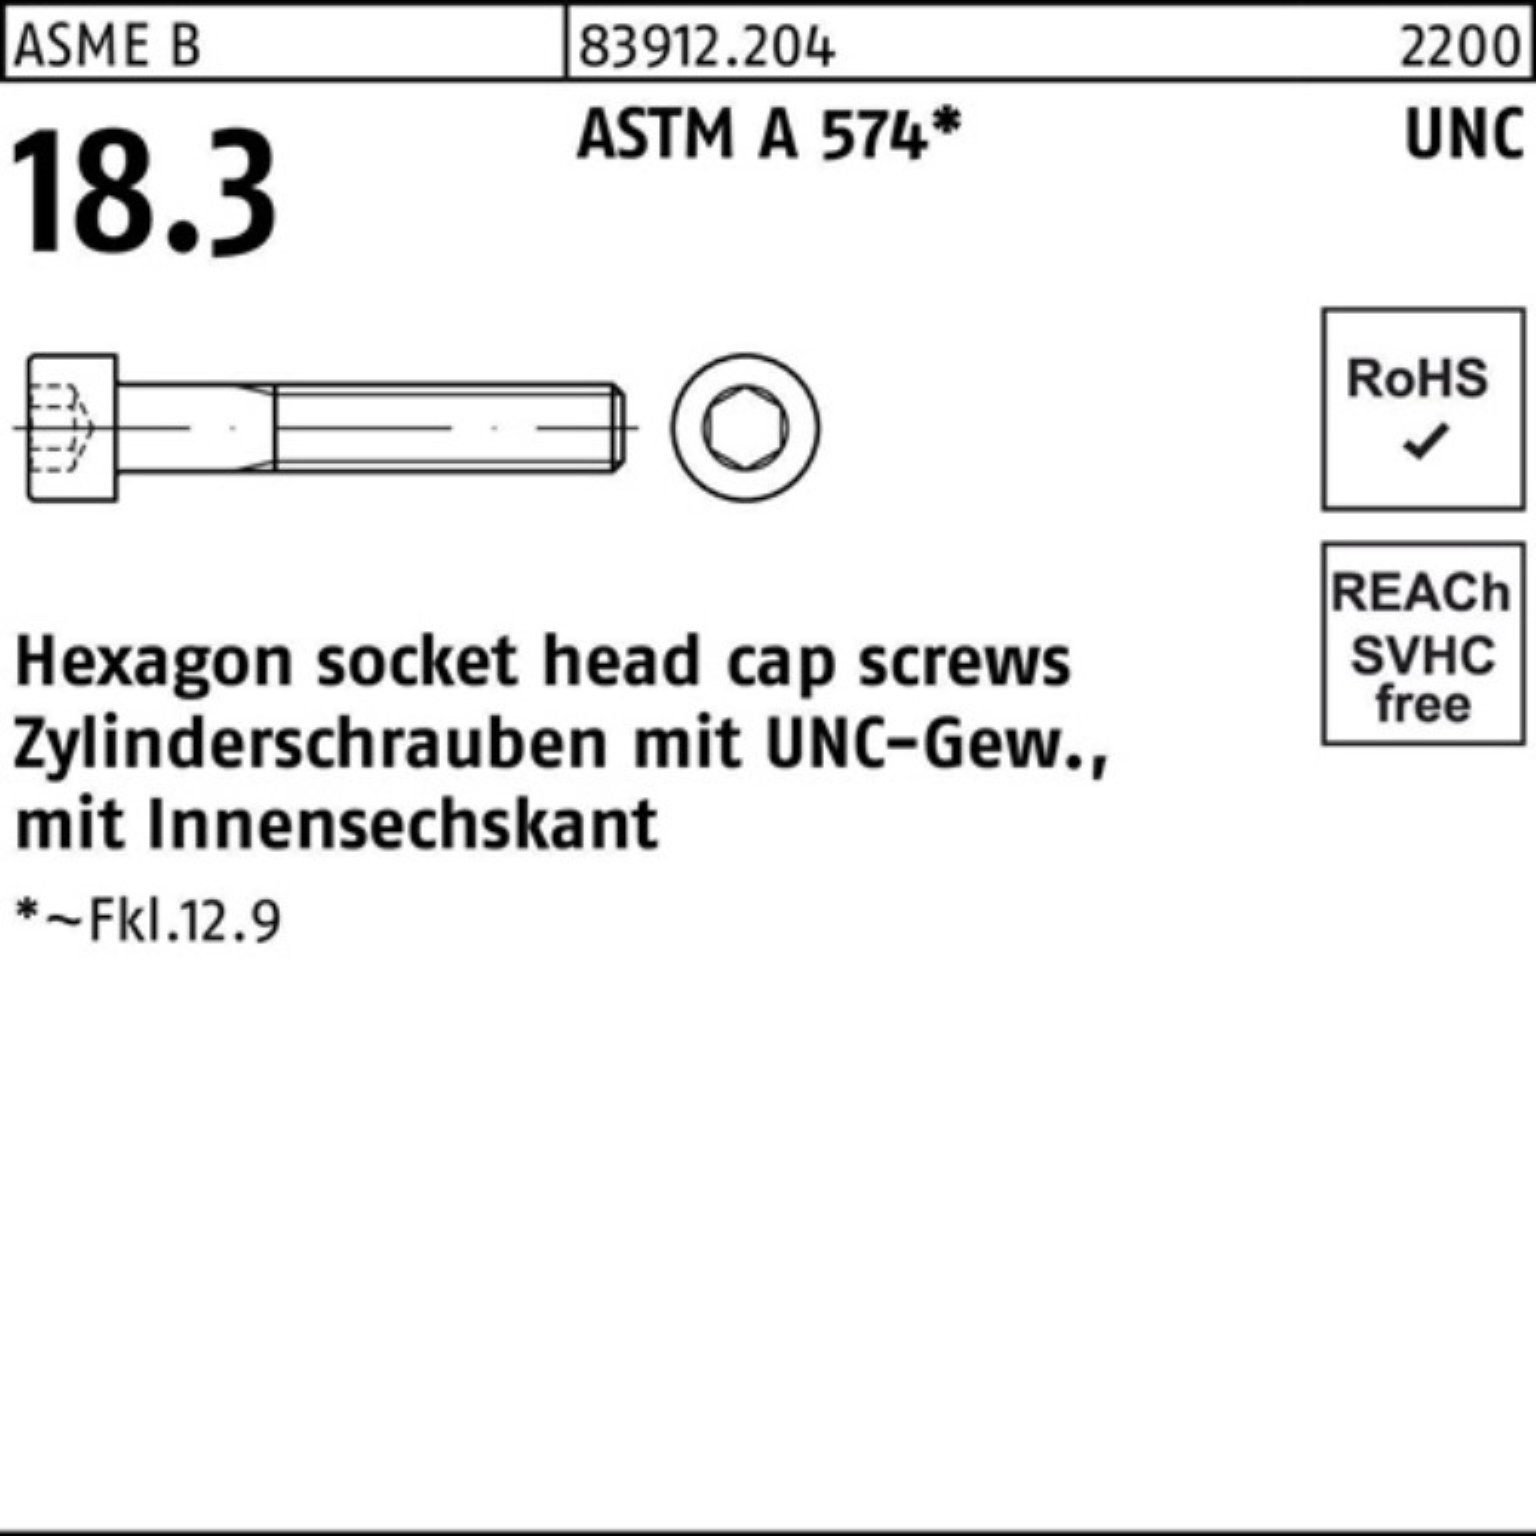 Pack 1/4x2 AS Zylinderschraube 83912 R Zylinderschraube Reyher UNC-Gewinde/Innen-6kt 1/4 100er